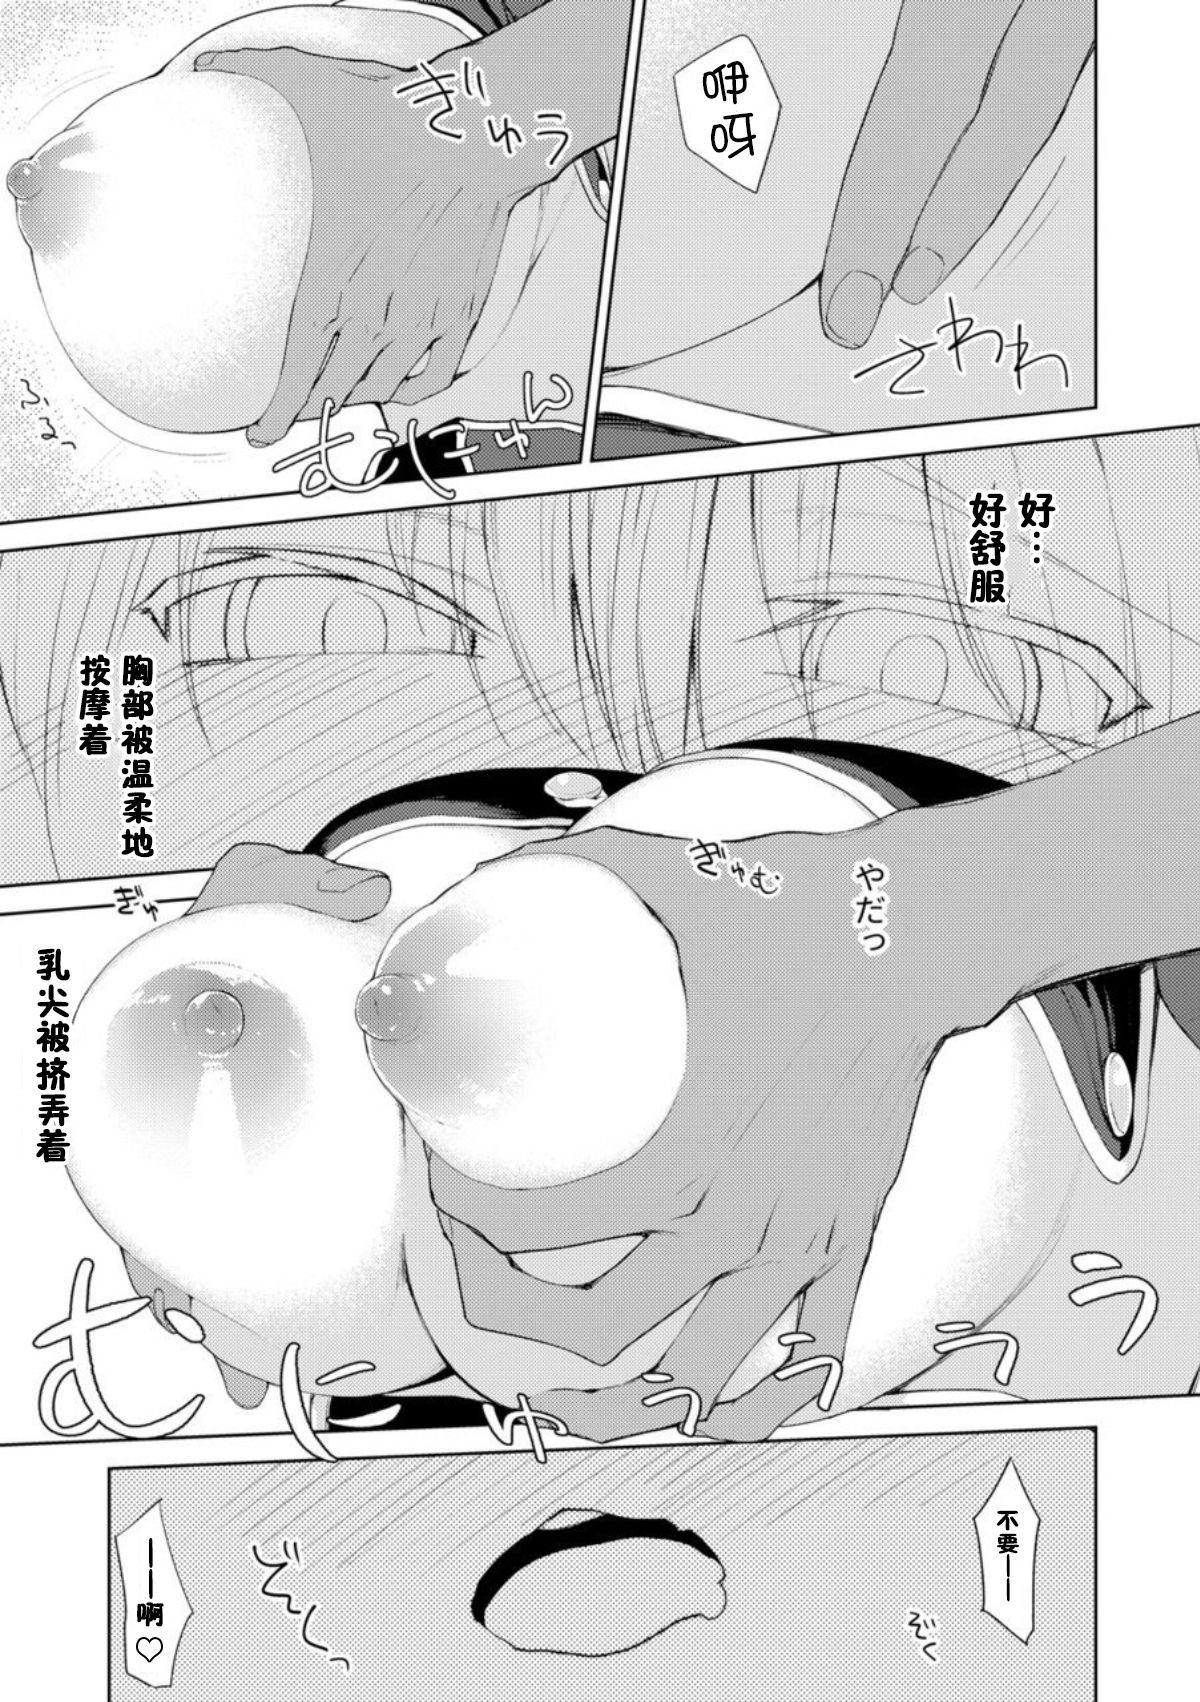 Furry Persis vs Oppai Seijin - Sennen sensou aigis Alone - Page 10